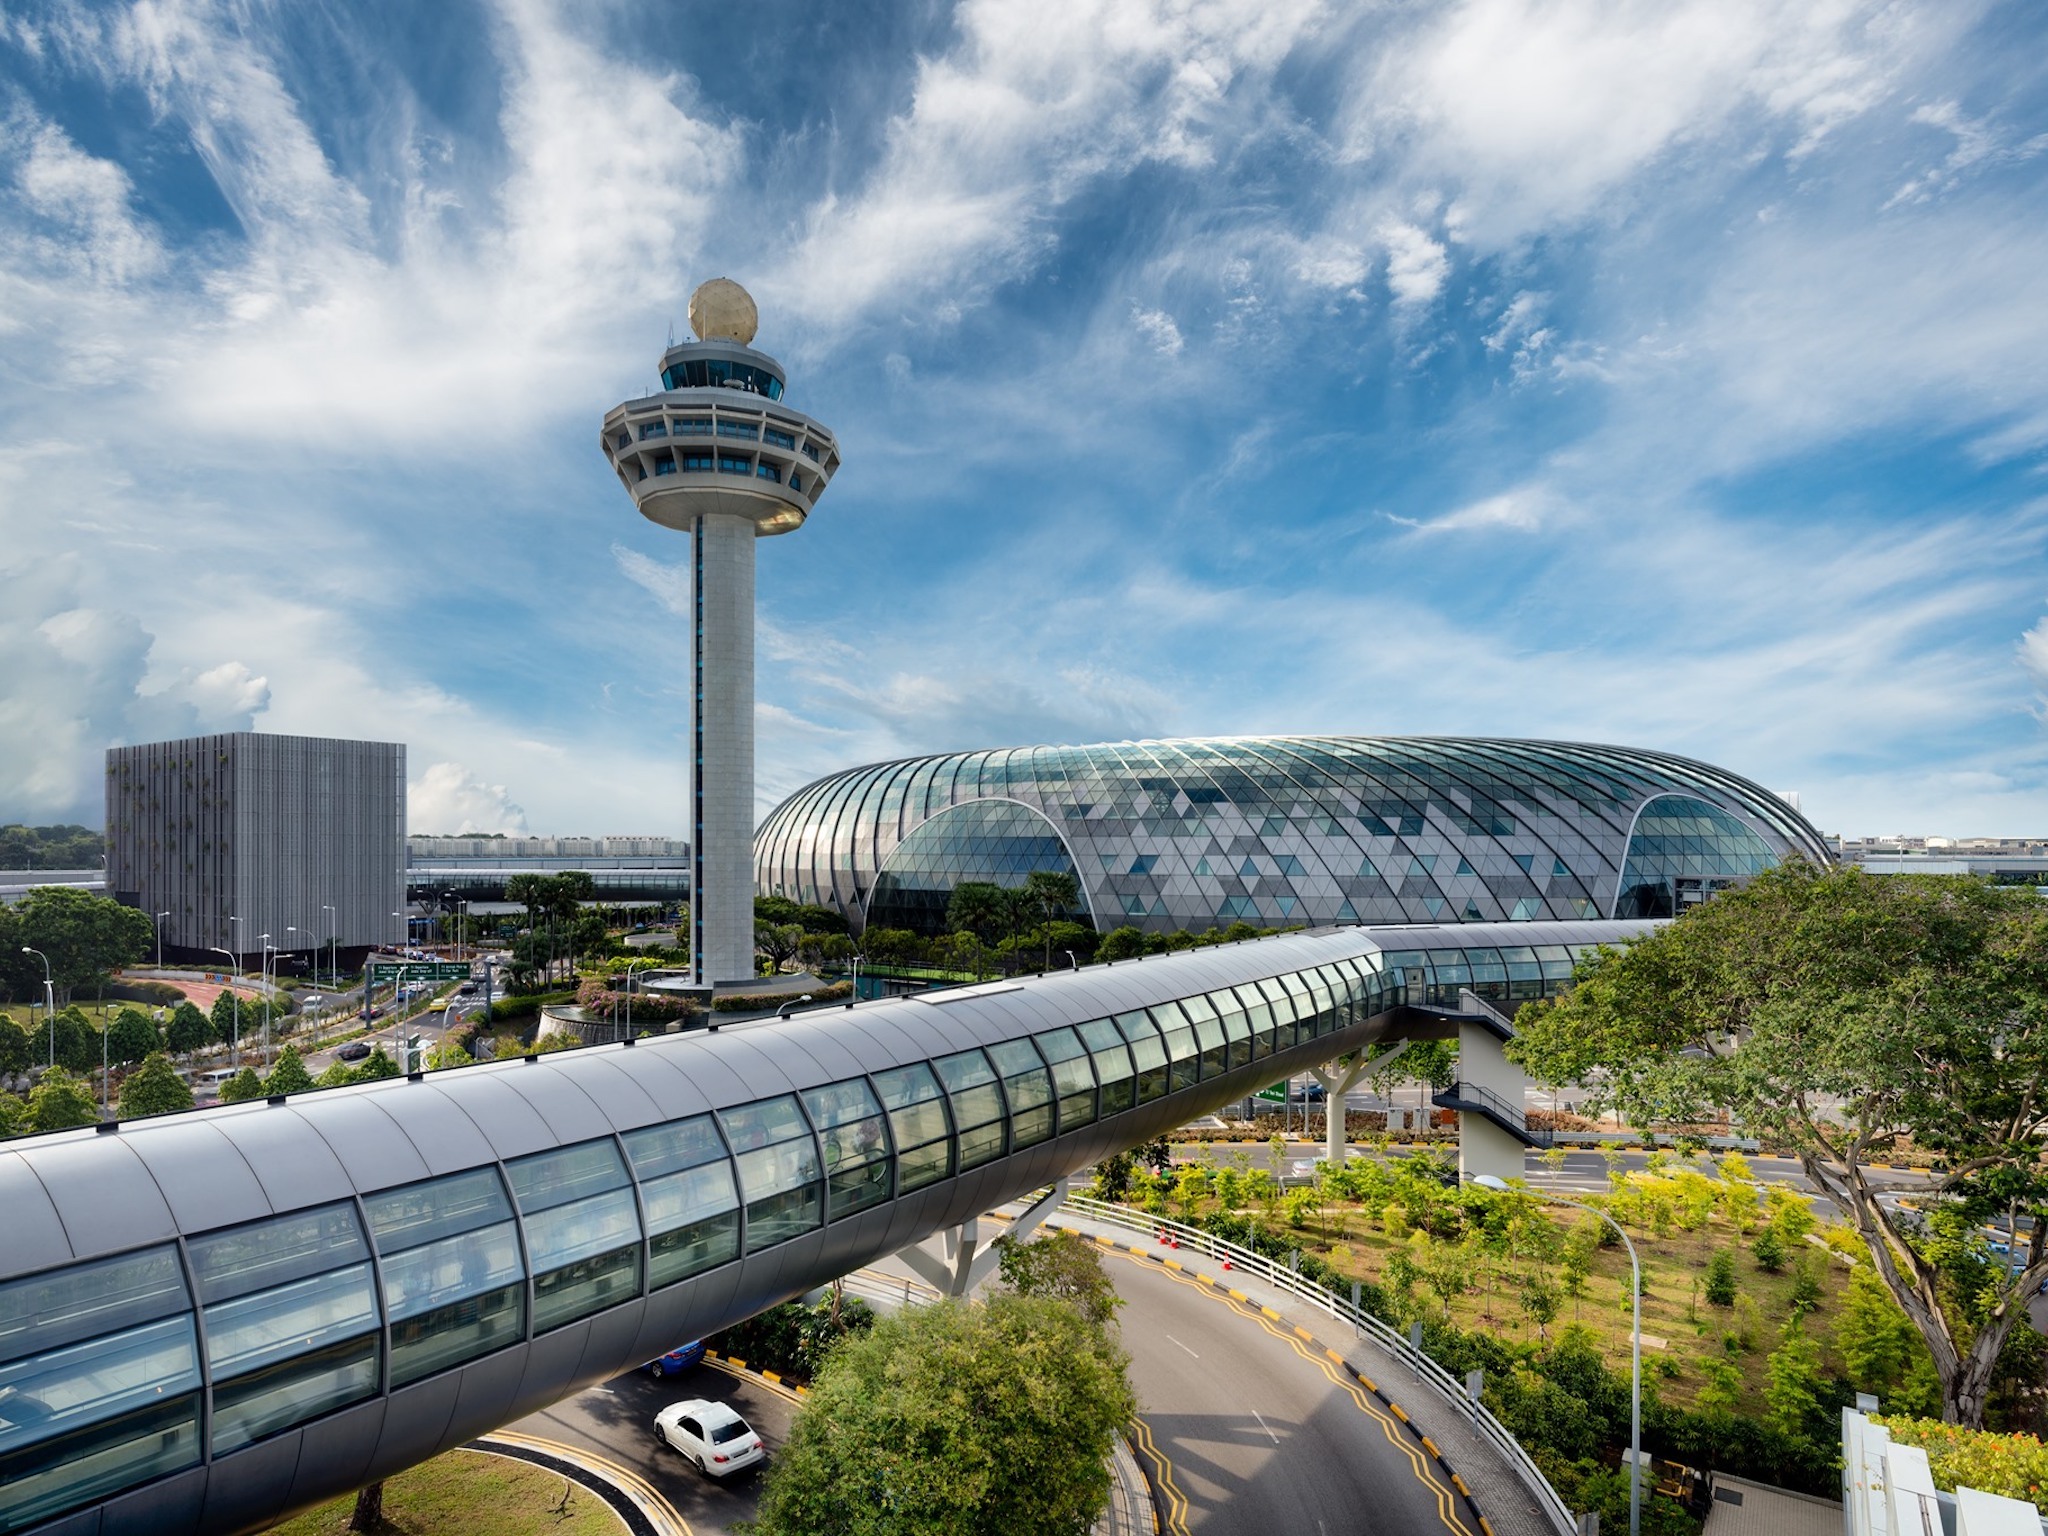 Singapore Changi Airport - In Transit